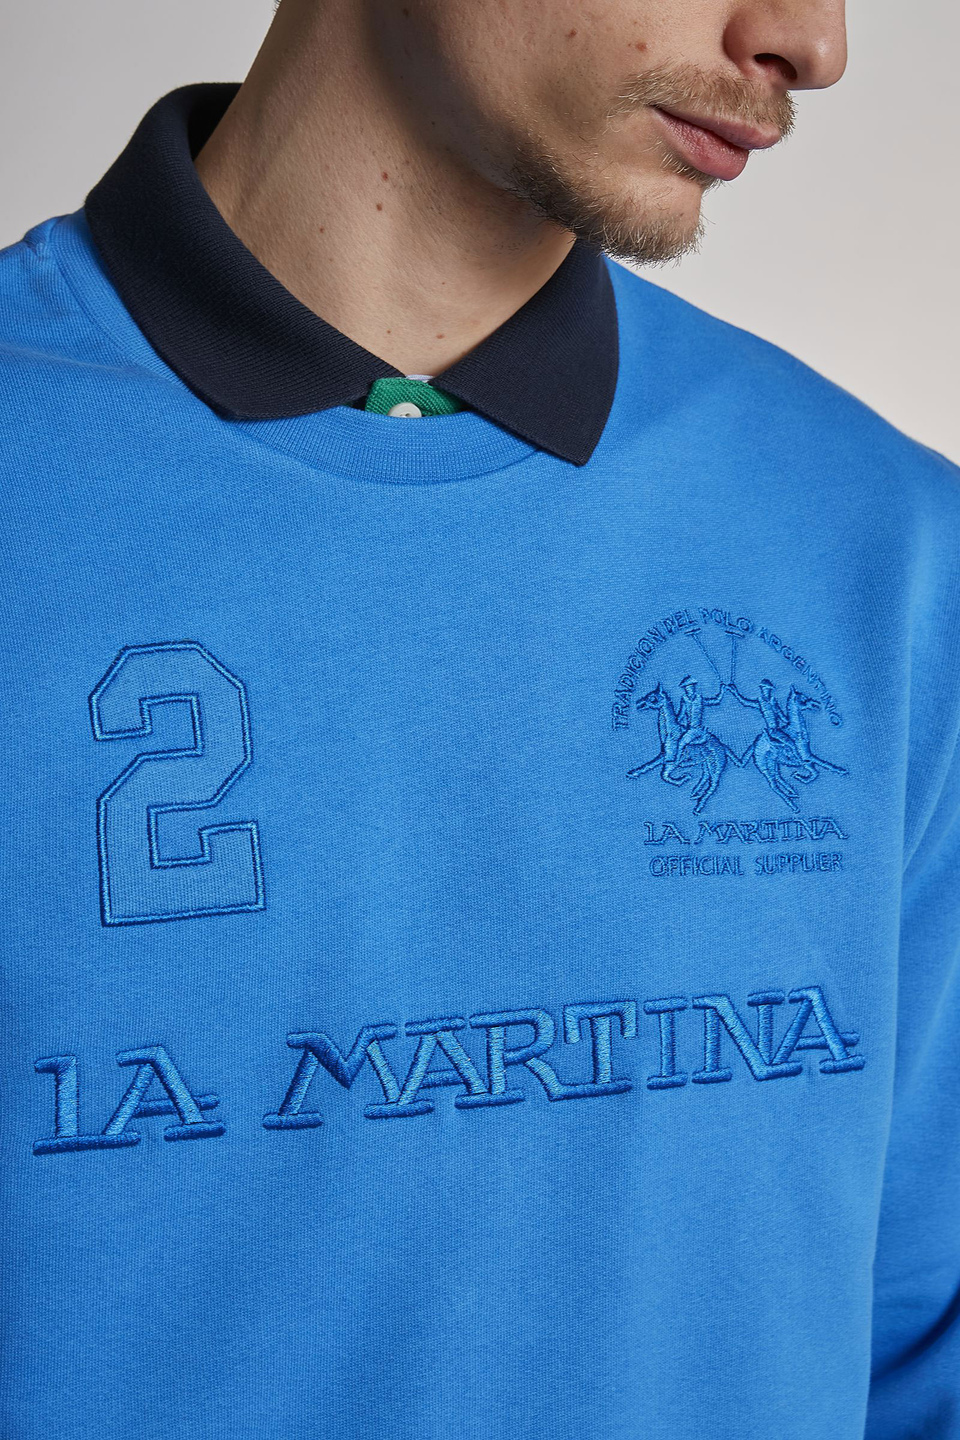 Sweat-shirt ras de cou homme en coton coupe classique | La Martina - Official Online Shop